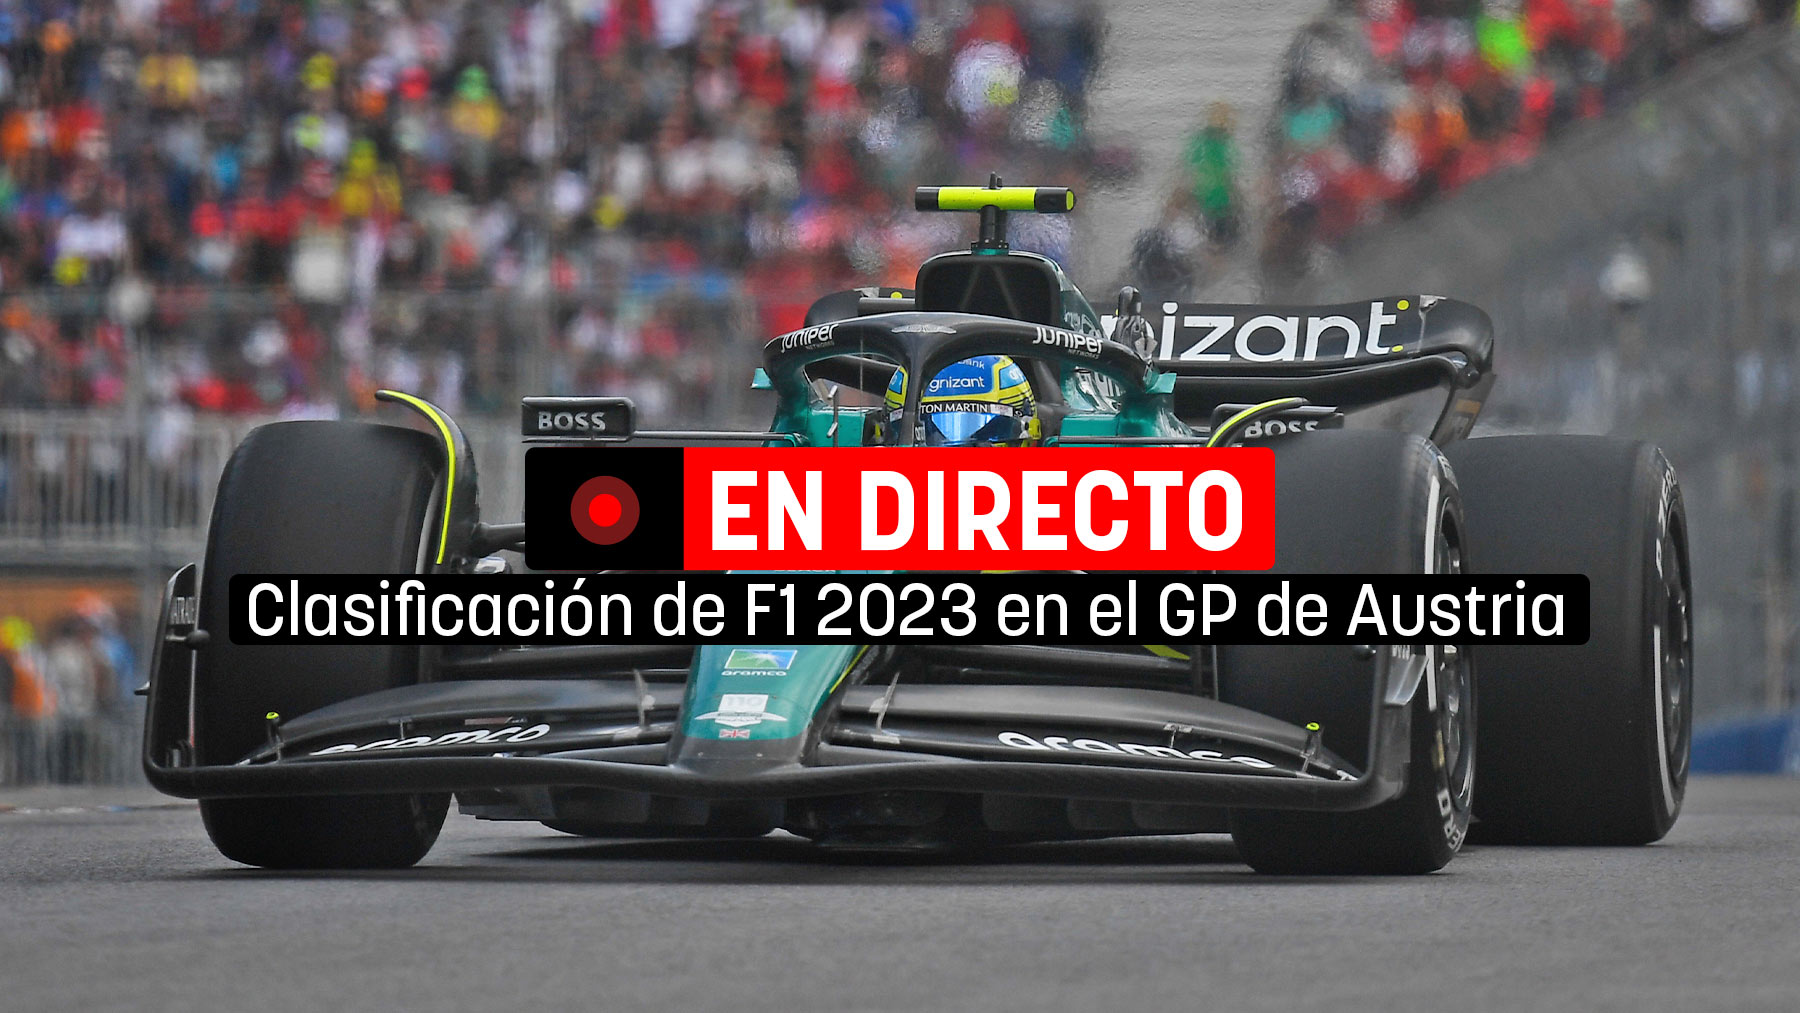 Clasificación del GP de Austria de F1 2023 en directo | Fórmula 1 con Fernando Alonso y Carlos Sainz en vivo.